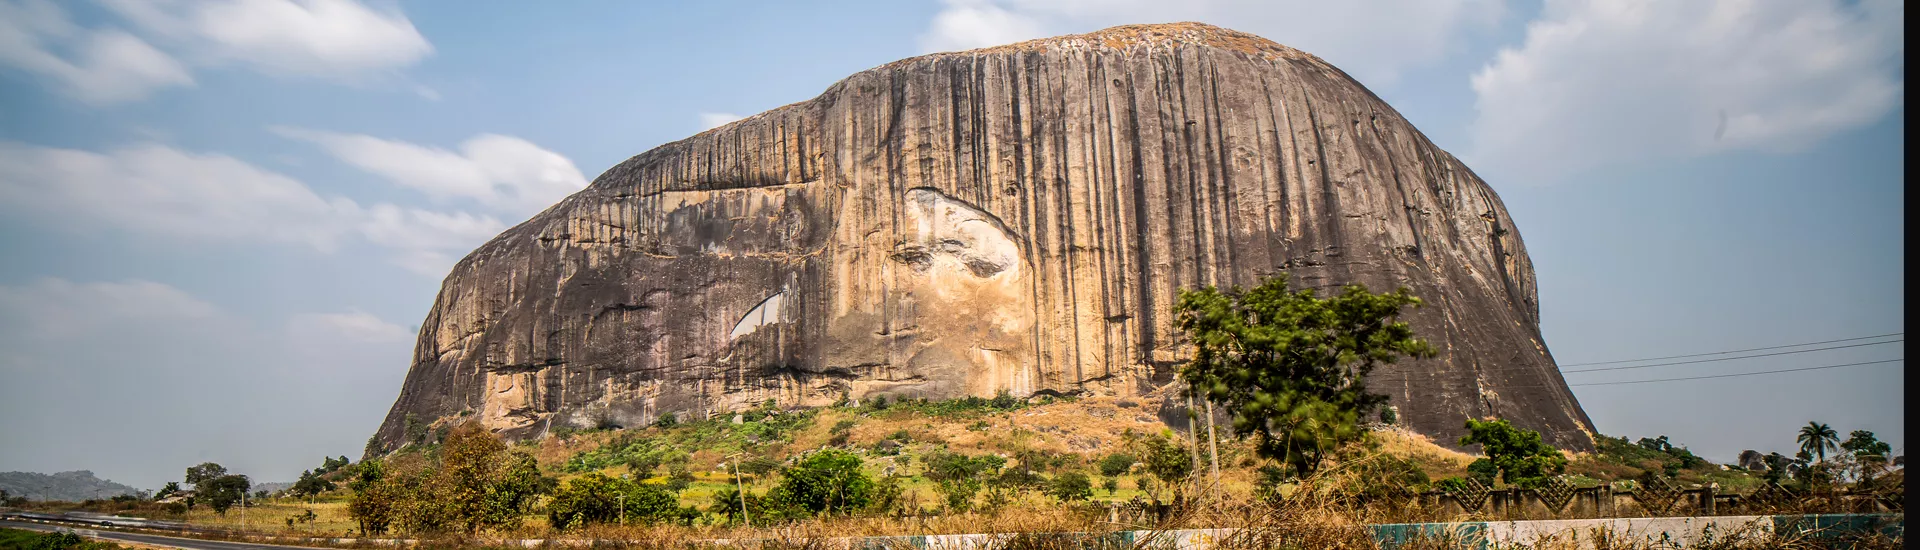 Zuma Rock in der Nähe von Abuja, Nigeria